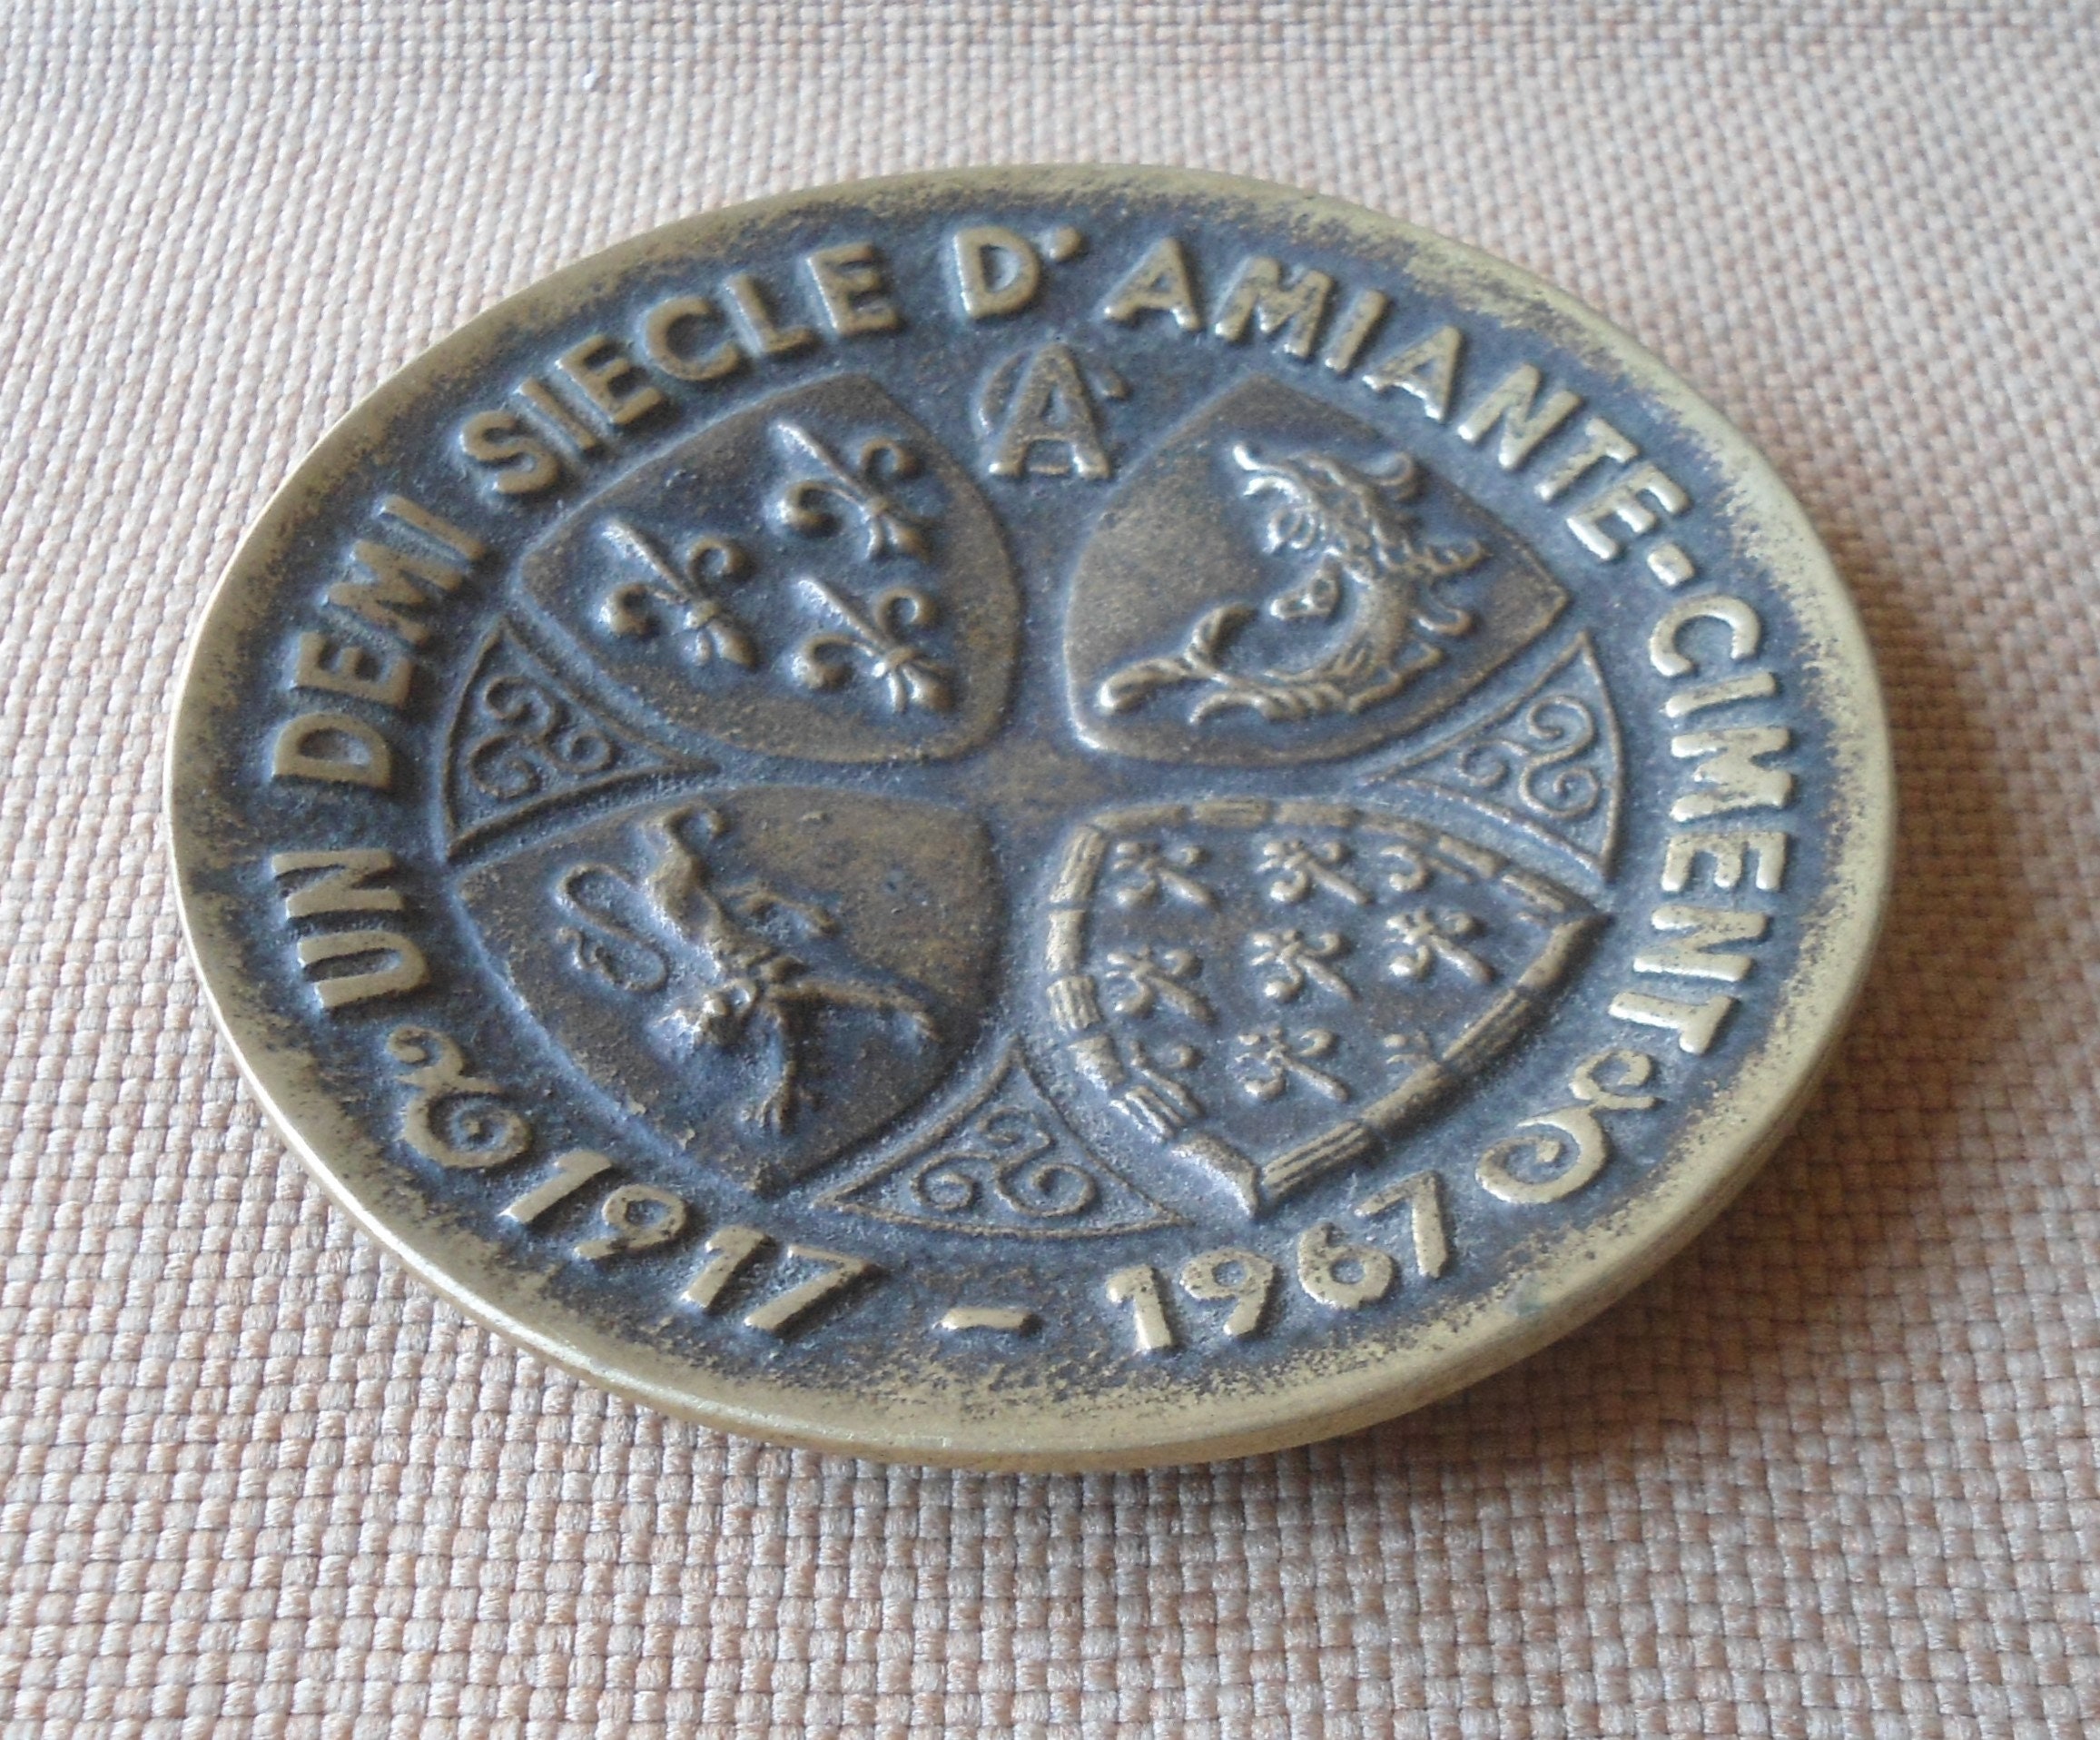 Vide Poche Coupelle en Bronze Publicitaire Un Demi Siècle d'amiante Ciment 1917 - 1967 Signé Max Le 